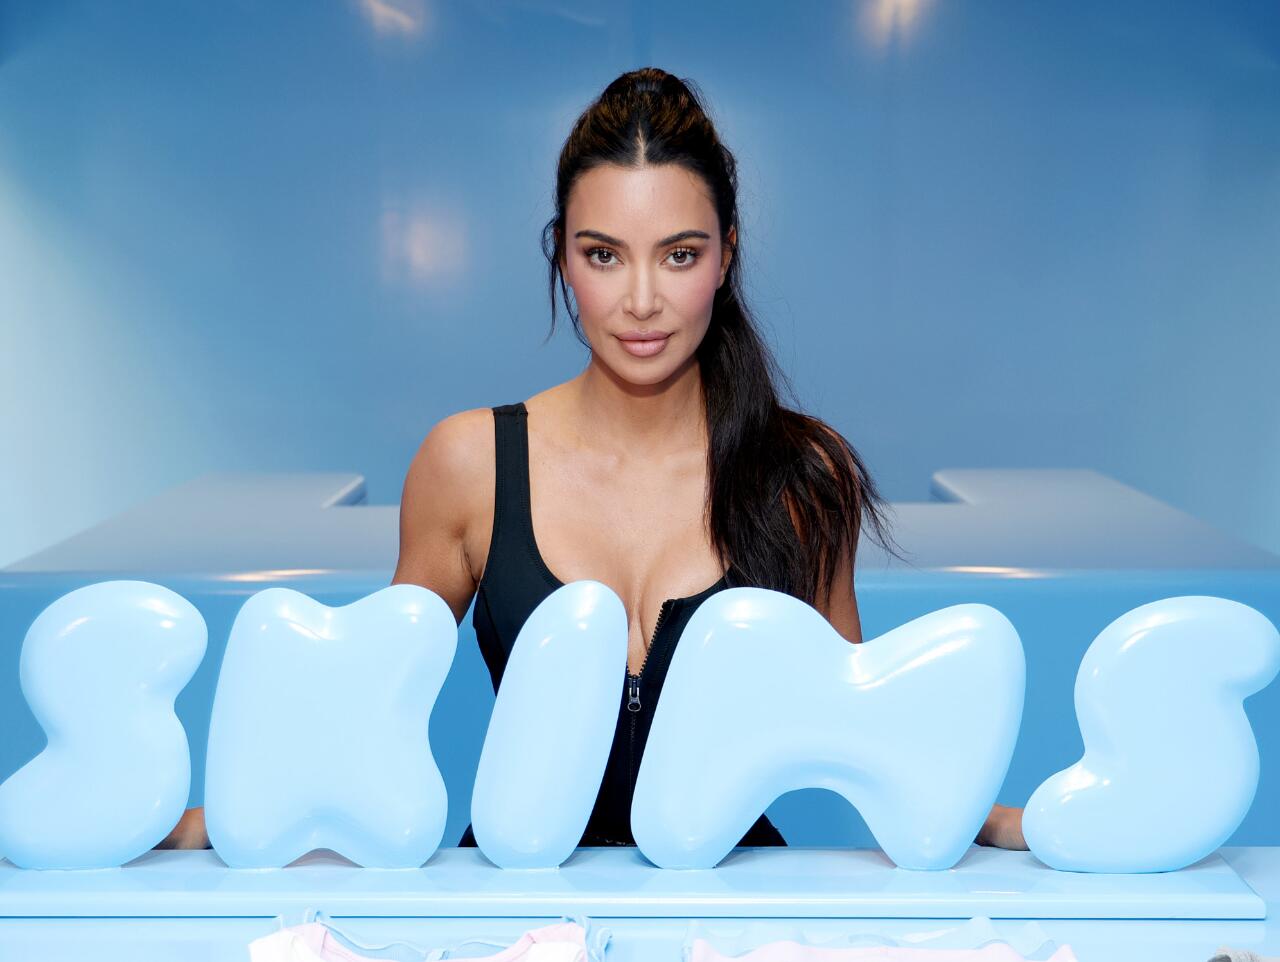 金·卡戴珊\nSKIMS是一个由全球网红金卡戴珊(Kim Kardashian)创立的品牌。\nSKIMS成立于2019年，这个品牌主要提供内衣“、家居服“和塑身衣”等产品。\nSKIMS致力于为女性提供适合不同体型的多样化和包容性的风格和颜色选择，强调\